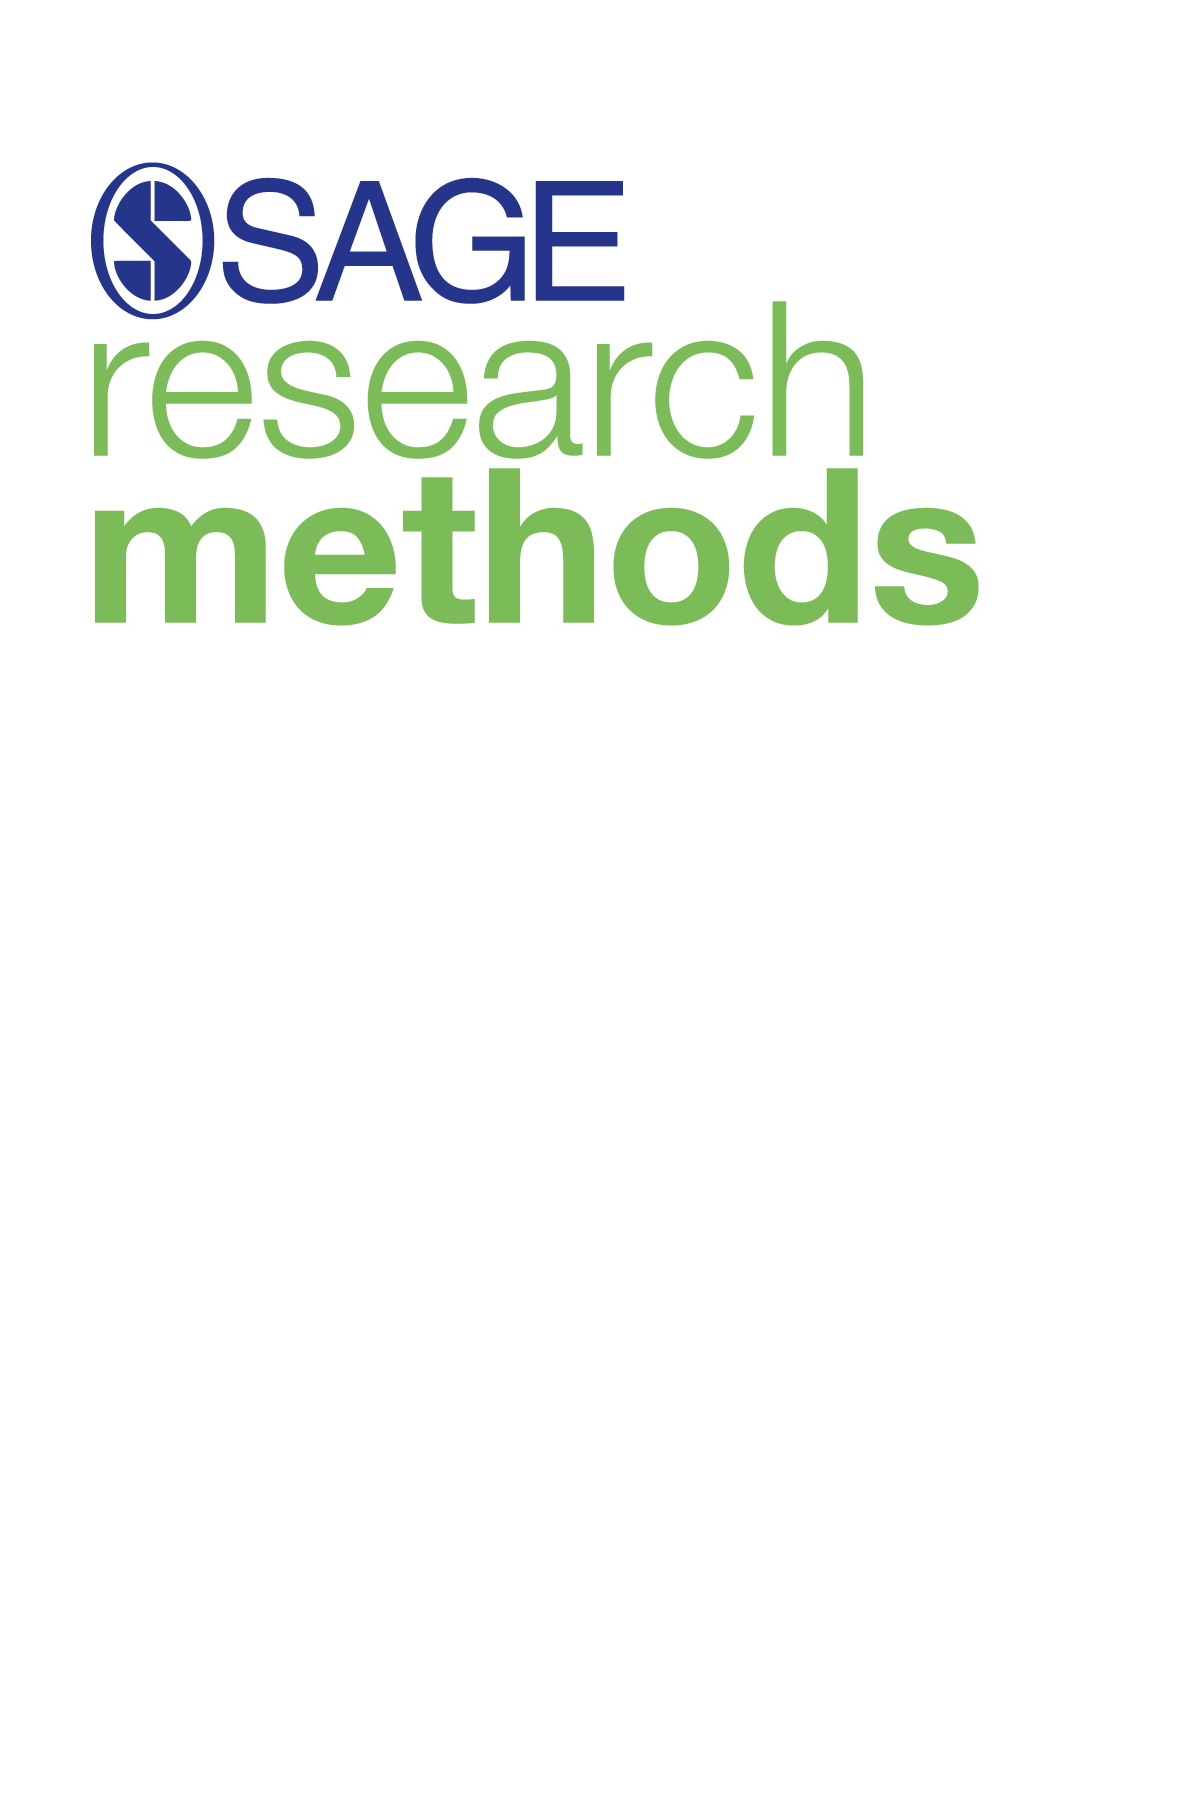 Sage Research Methods Logo